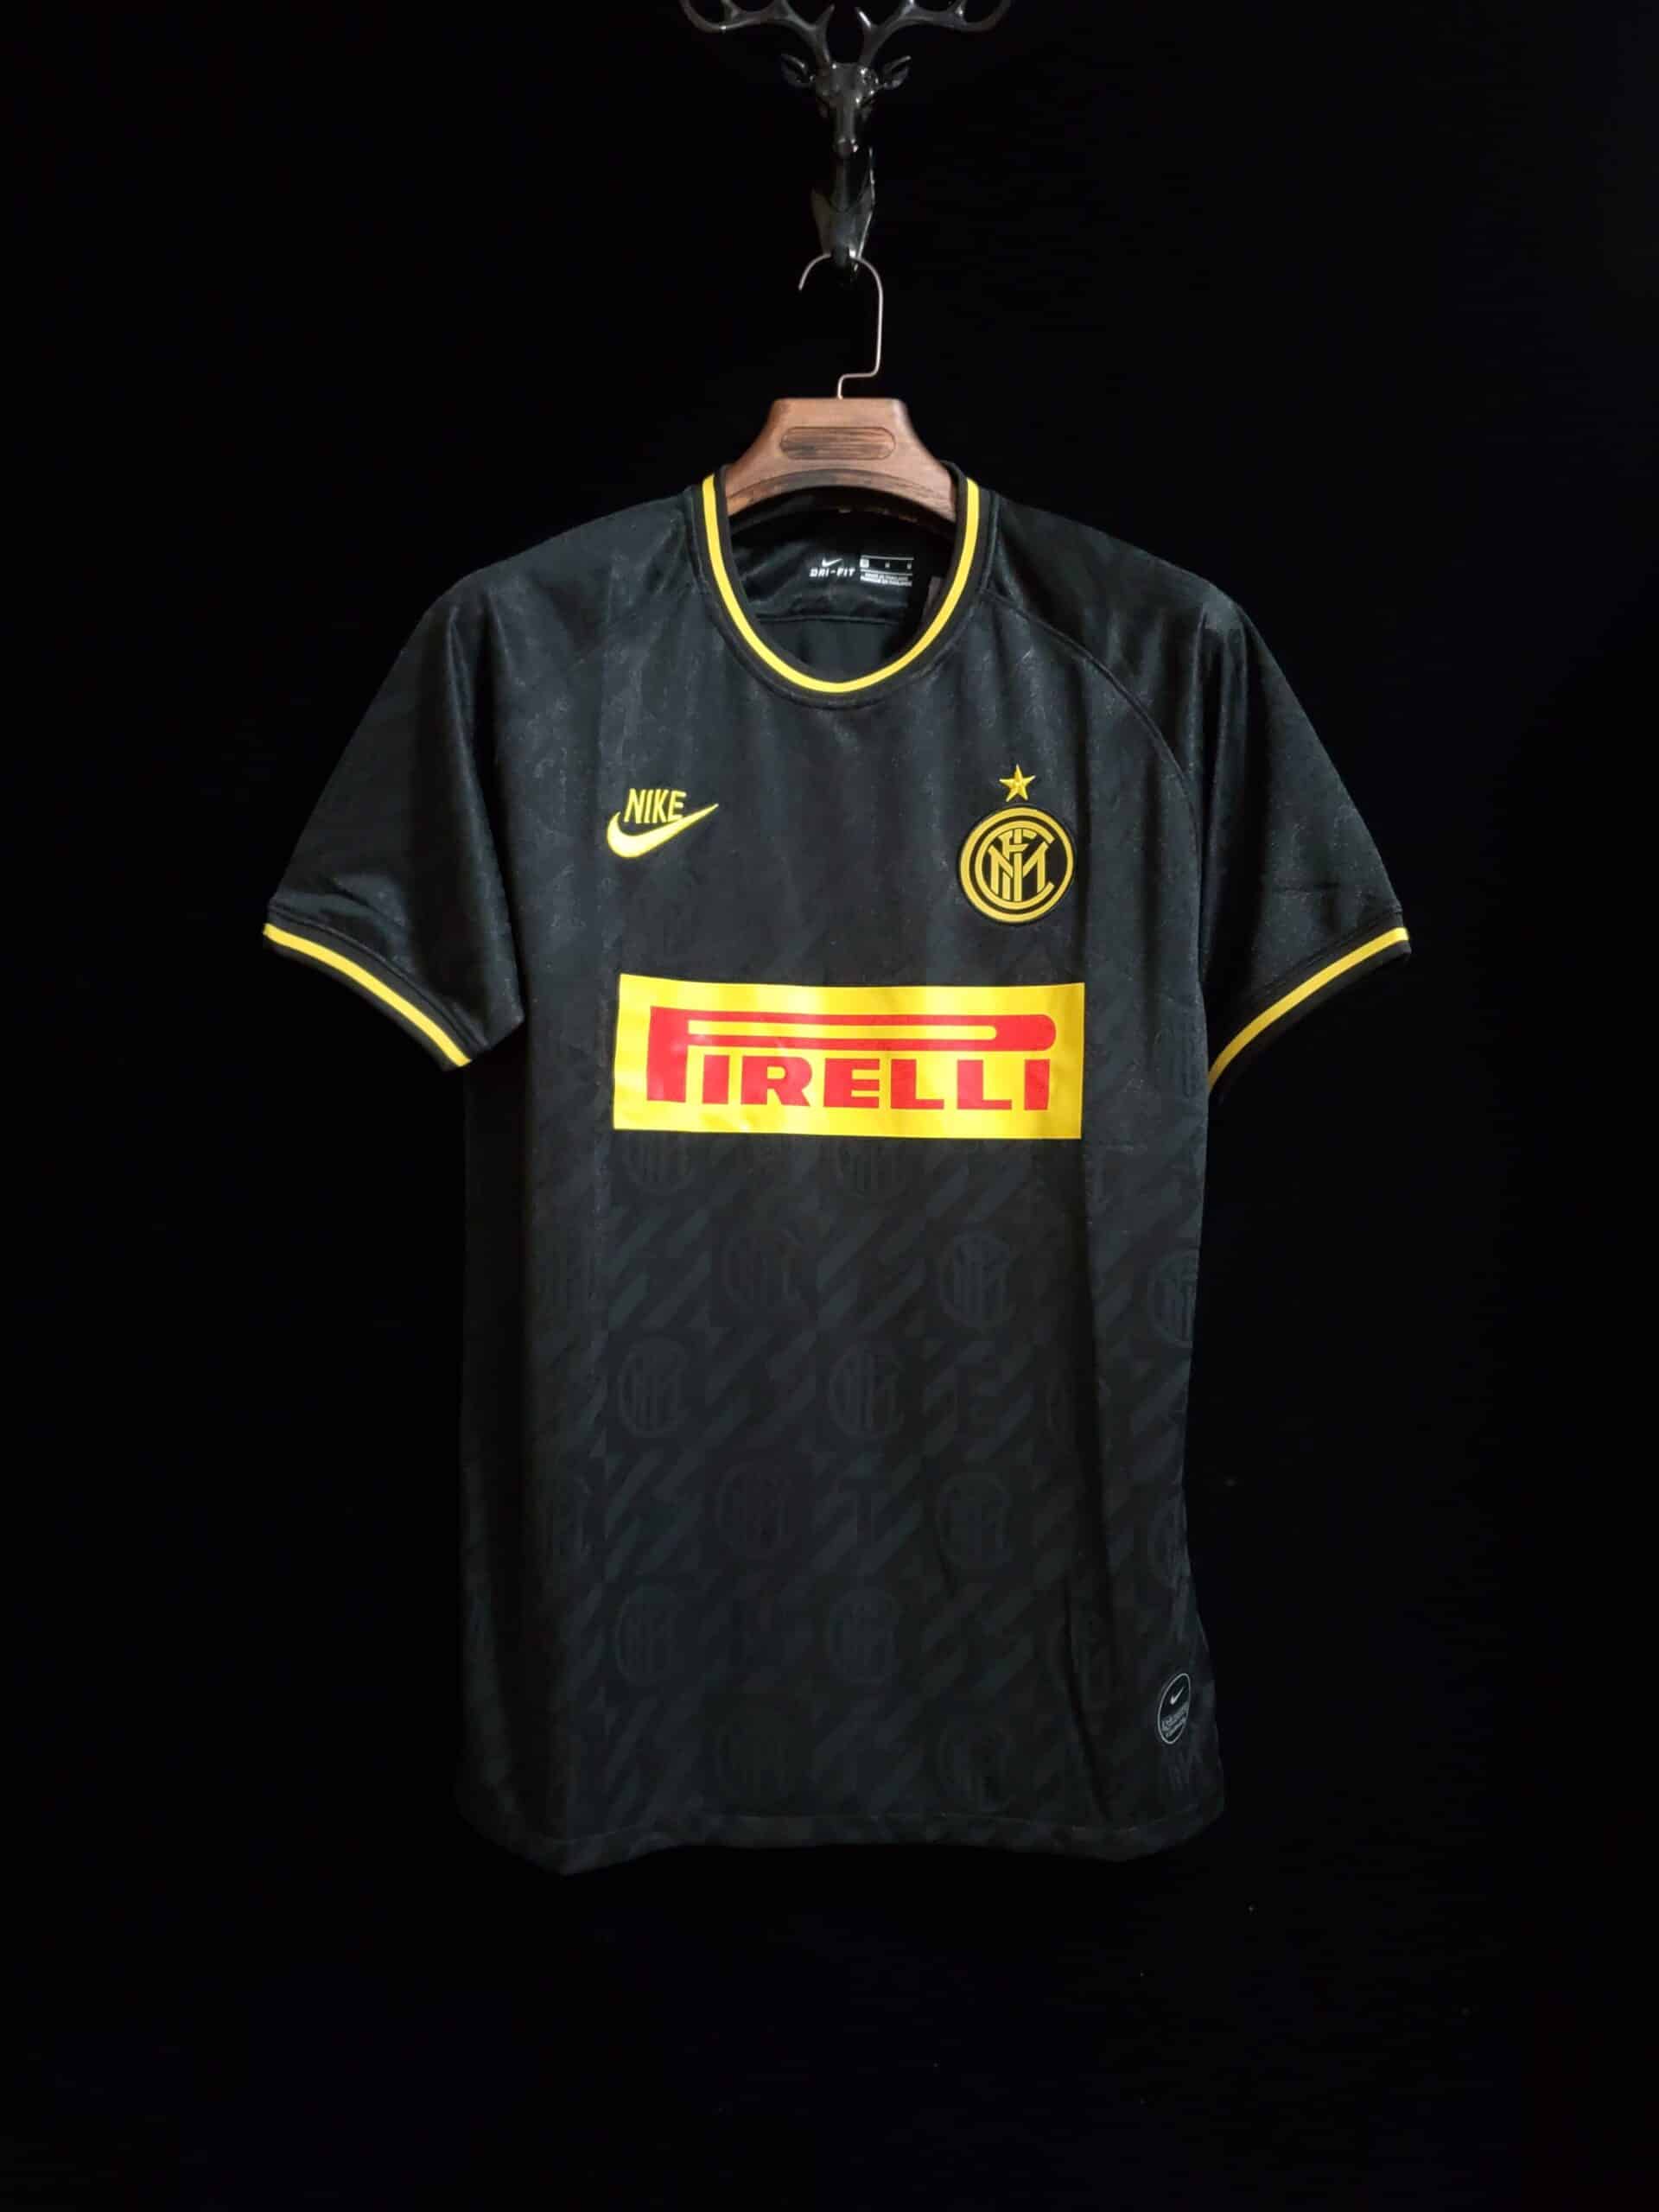 Buy Inter Milan 2019/2020 third away Kit - The Retro Kits